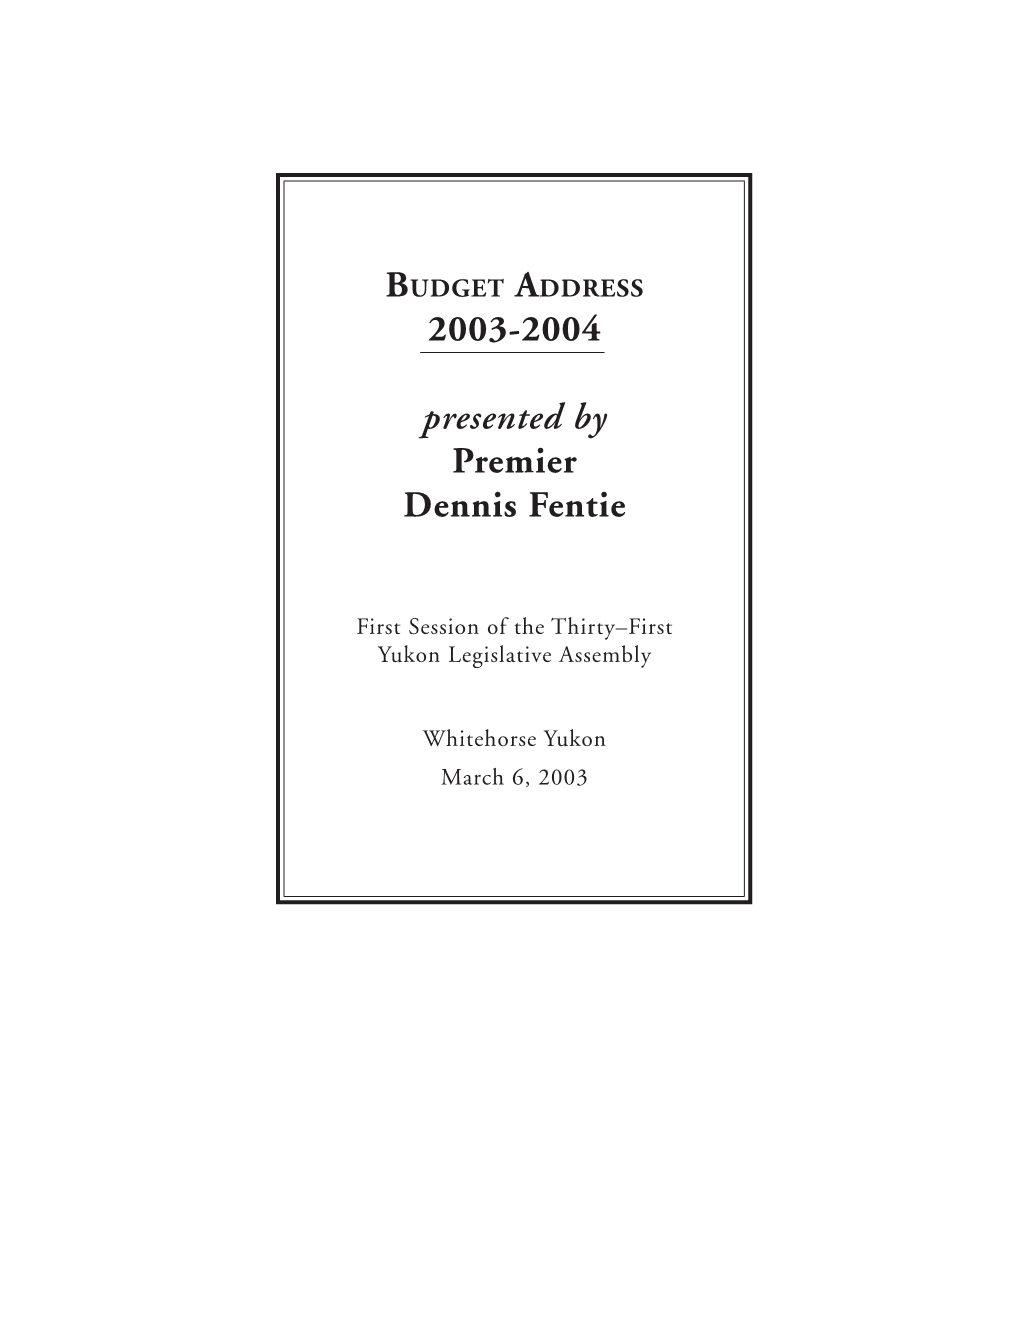 Budget Address 2003-2004 Presented by Premier Dennis Fentie